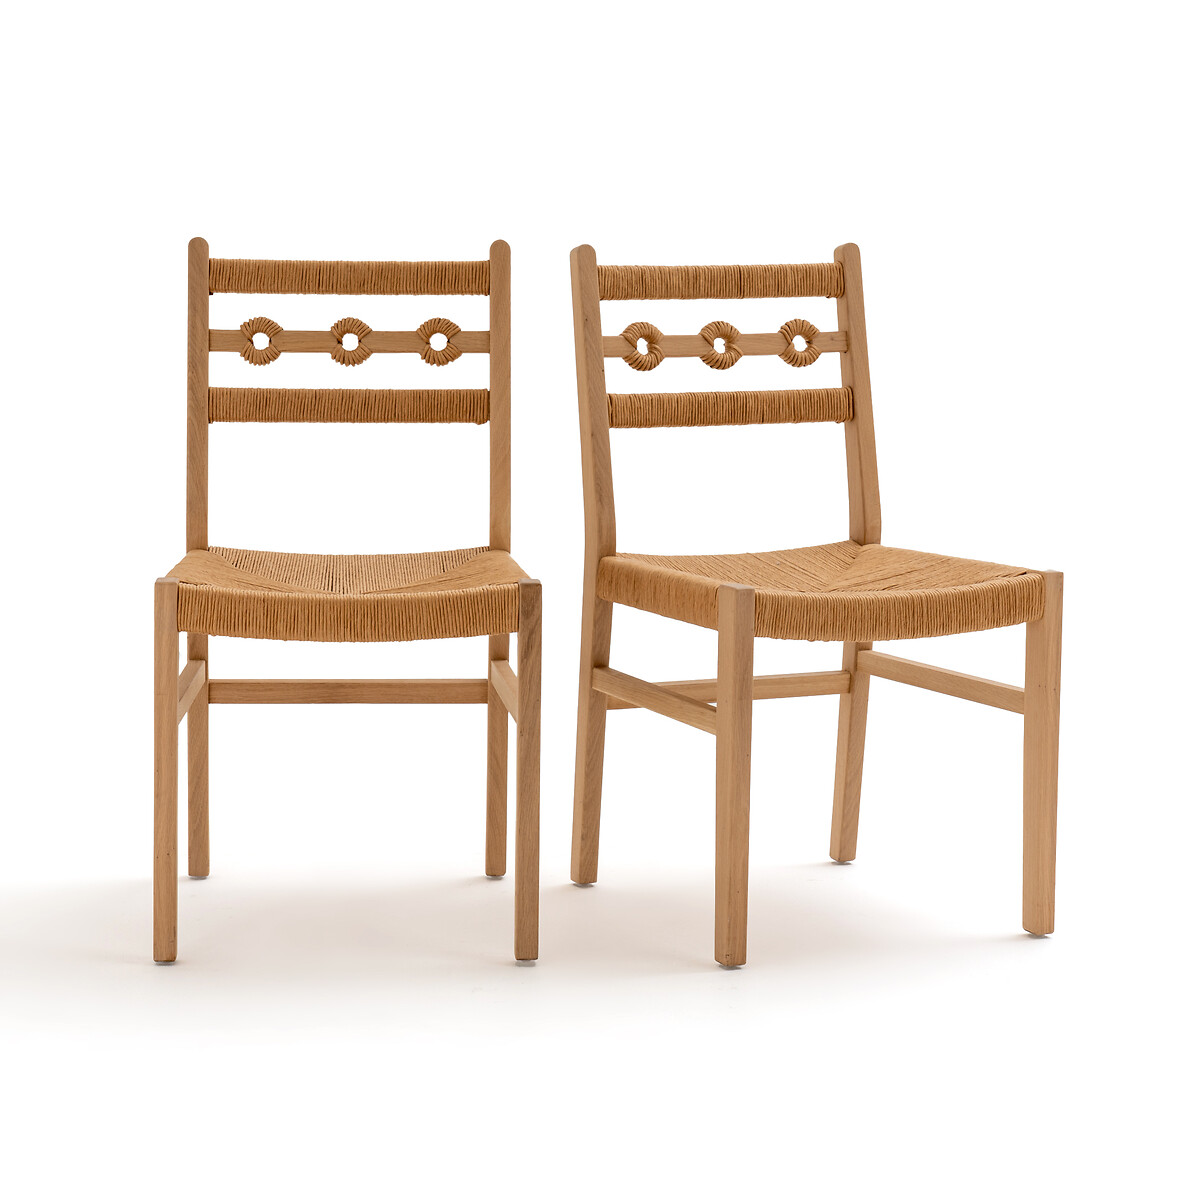 Комплект из стульев из дуба и плетеного материала Menorca единый размер каштановый банкетка для прихожей из дуба и плетеного материала waska единый размер бежевый